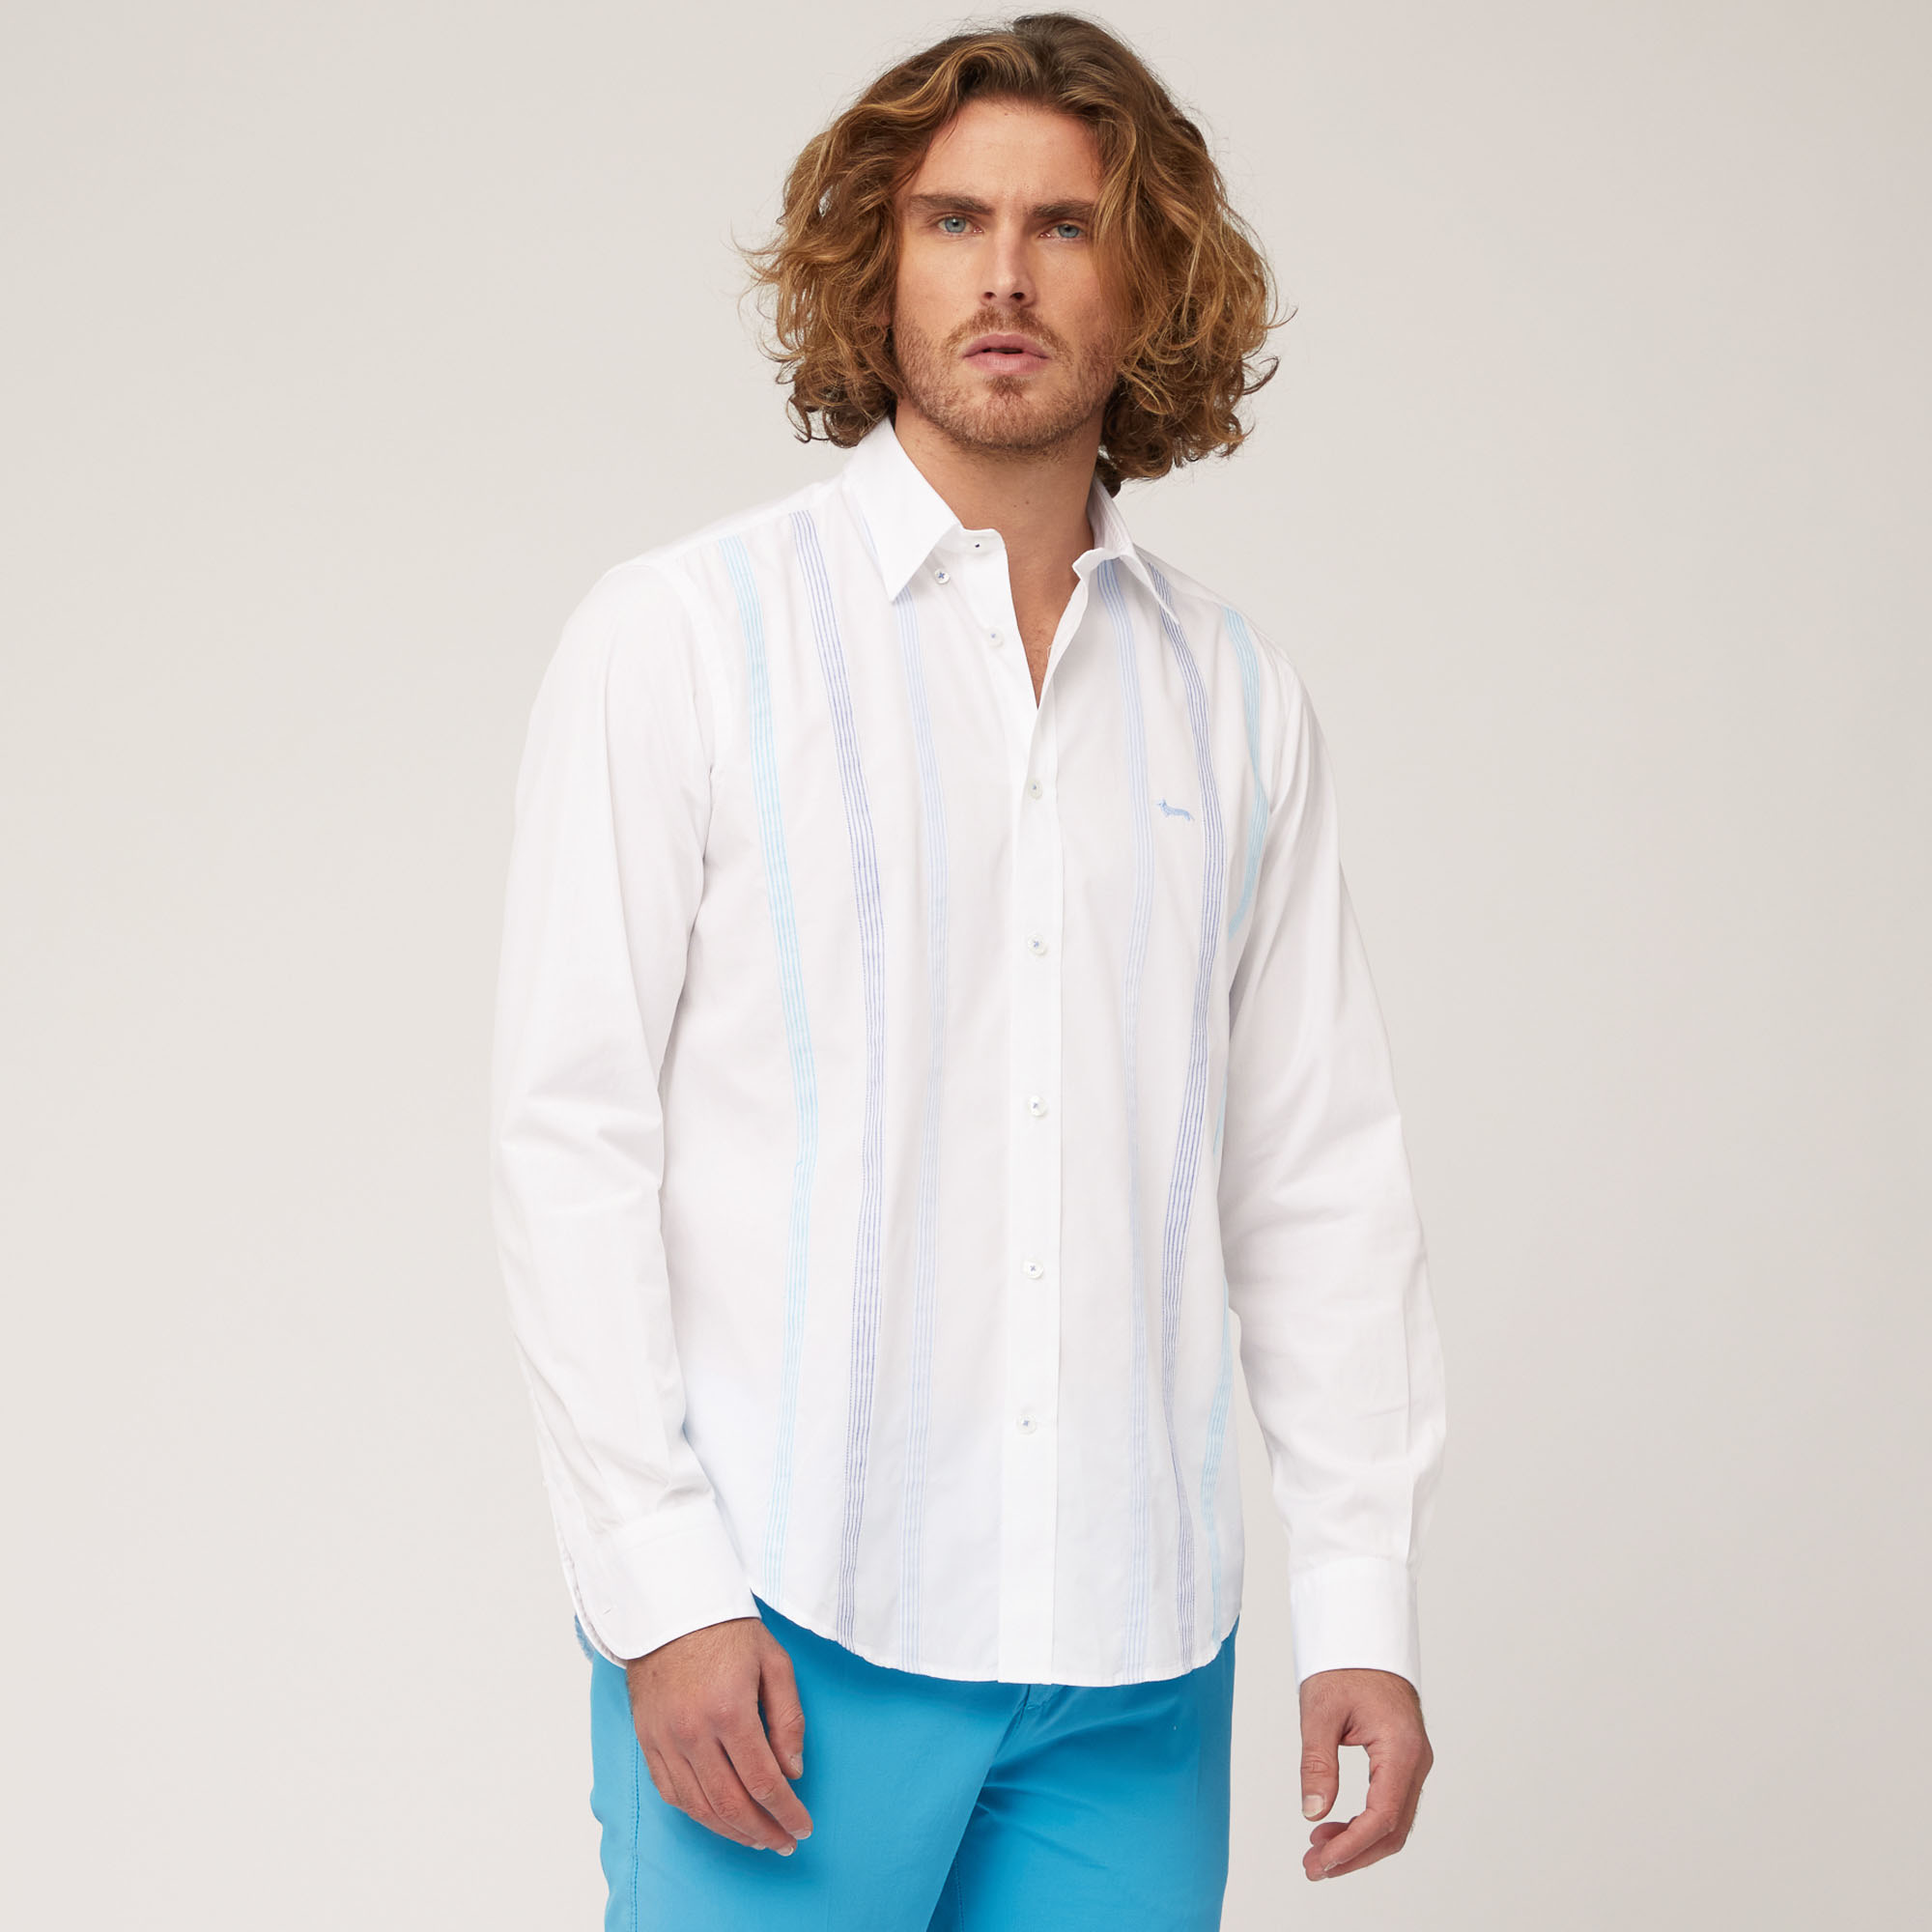 Camicia In Cotone Con Fasce Rigate, Bianco, large